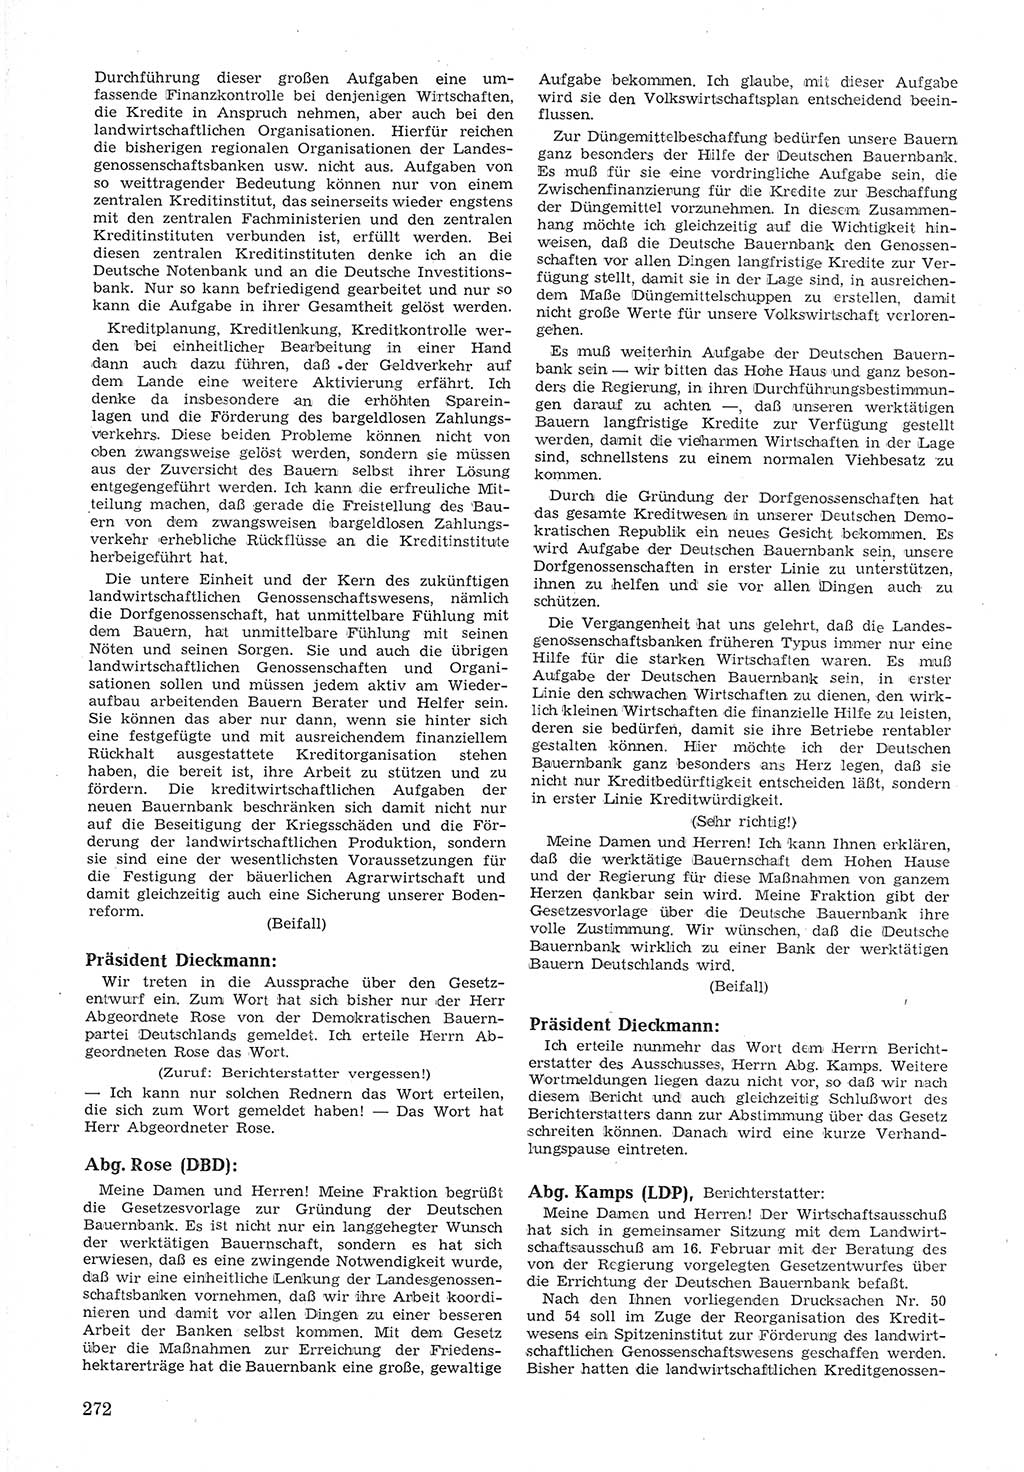 Provisorische Volkskammer (VK) der Deutschen Demokratischen Republik (DDR) 1949-1950, Dokument 286 (Prov. VK DDR 1949-1950, Dok. 286)